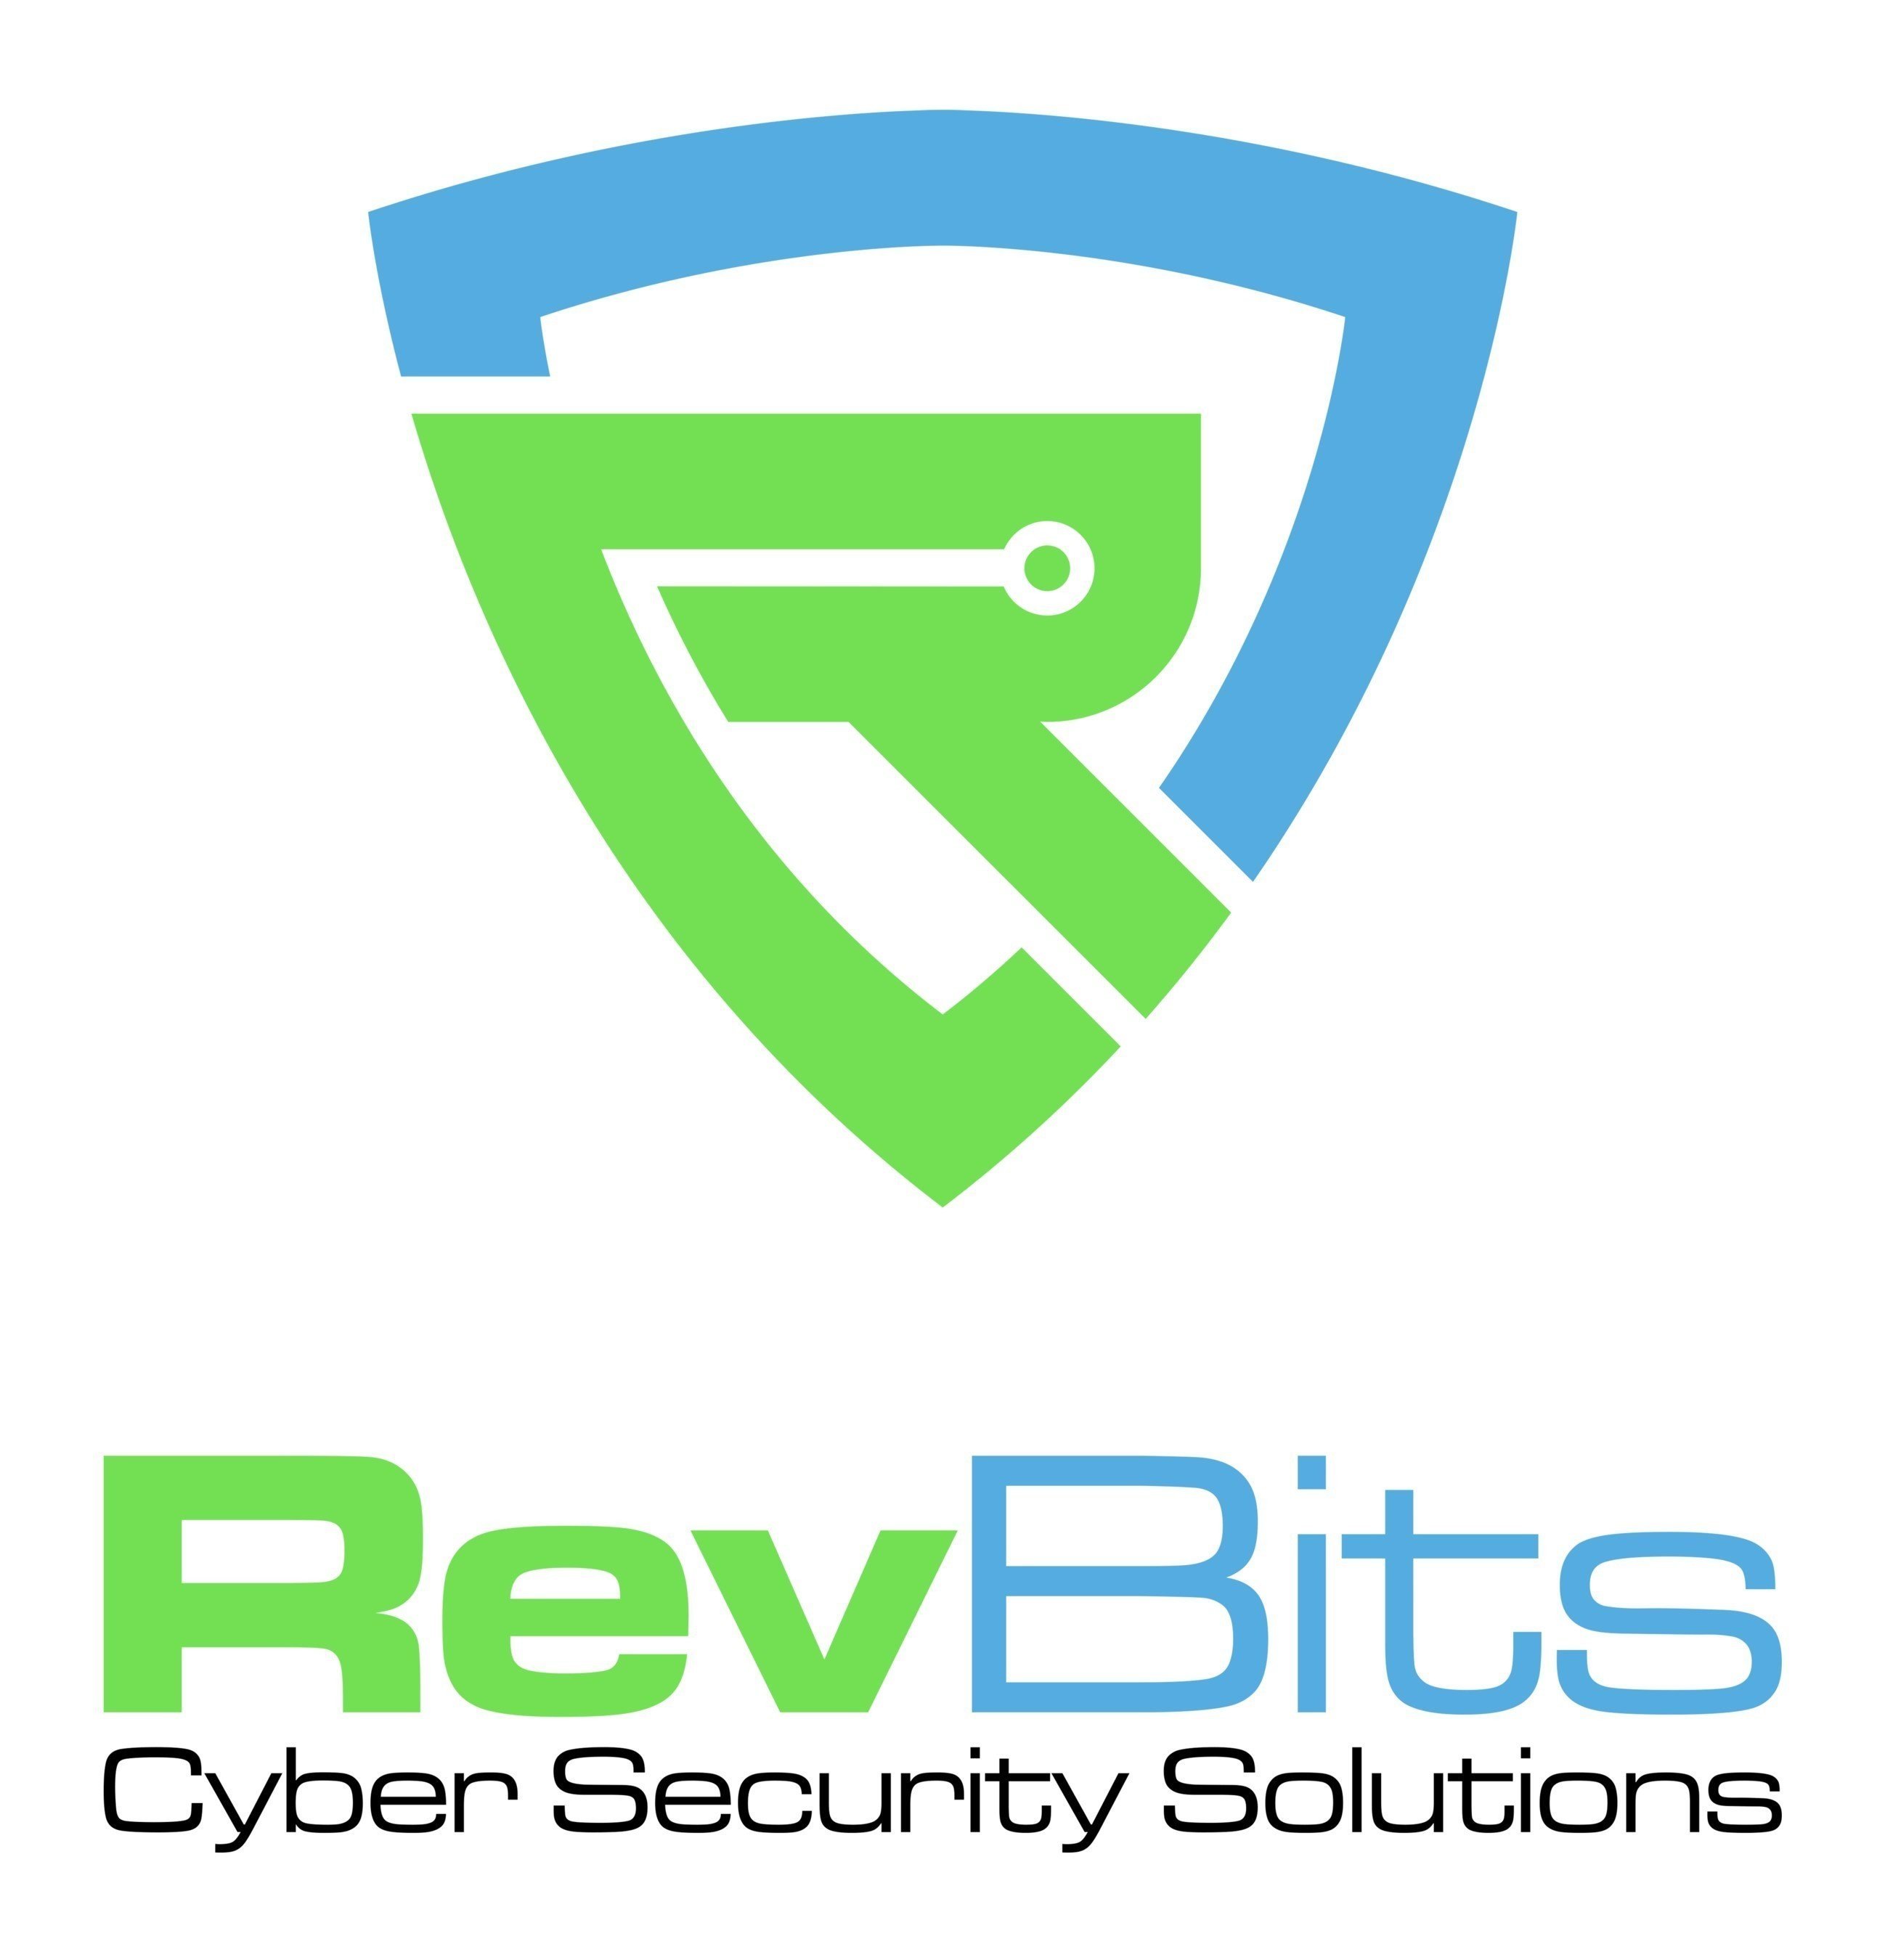 COMUNICADO: RevBits Zero Trust Network refuerza la seguridad de la red y protege los activos digitales